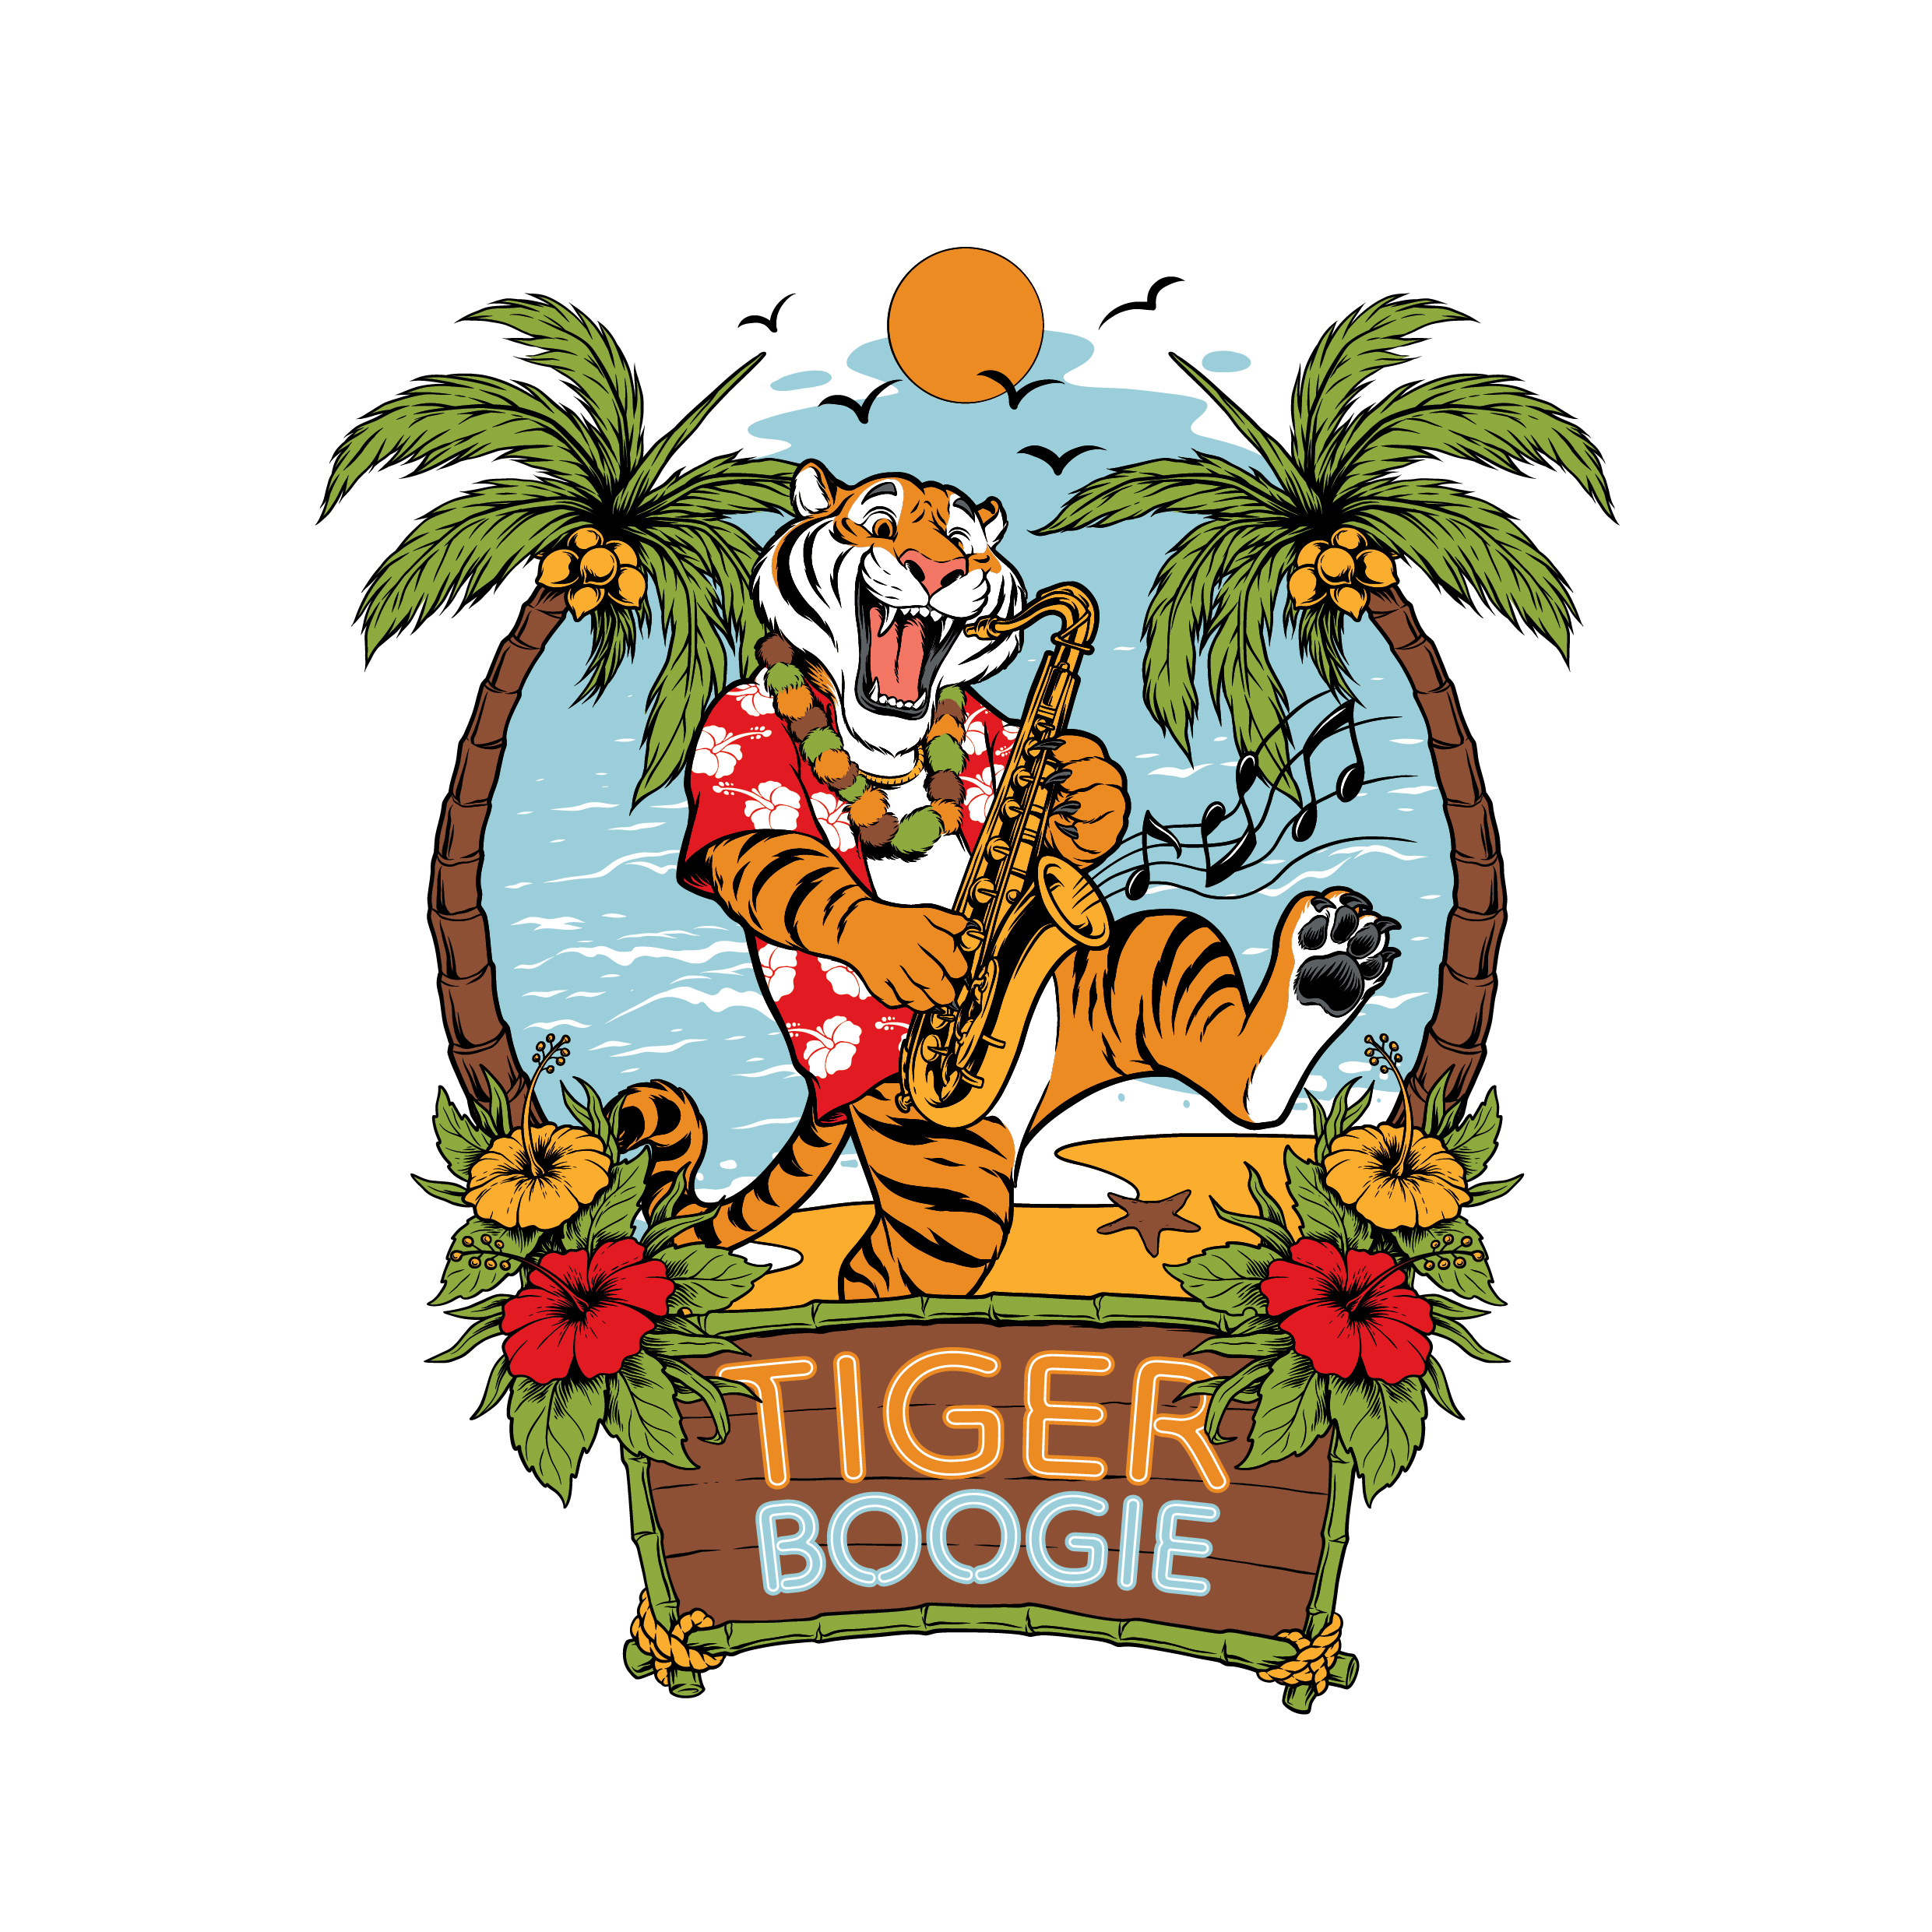 Tiger Boogie Houston logo on RaceRaves